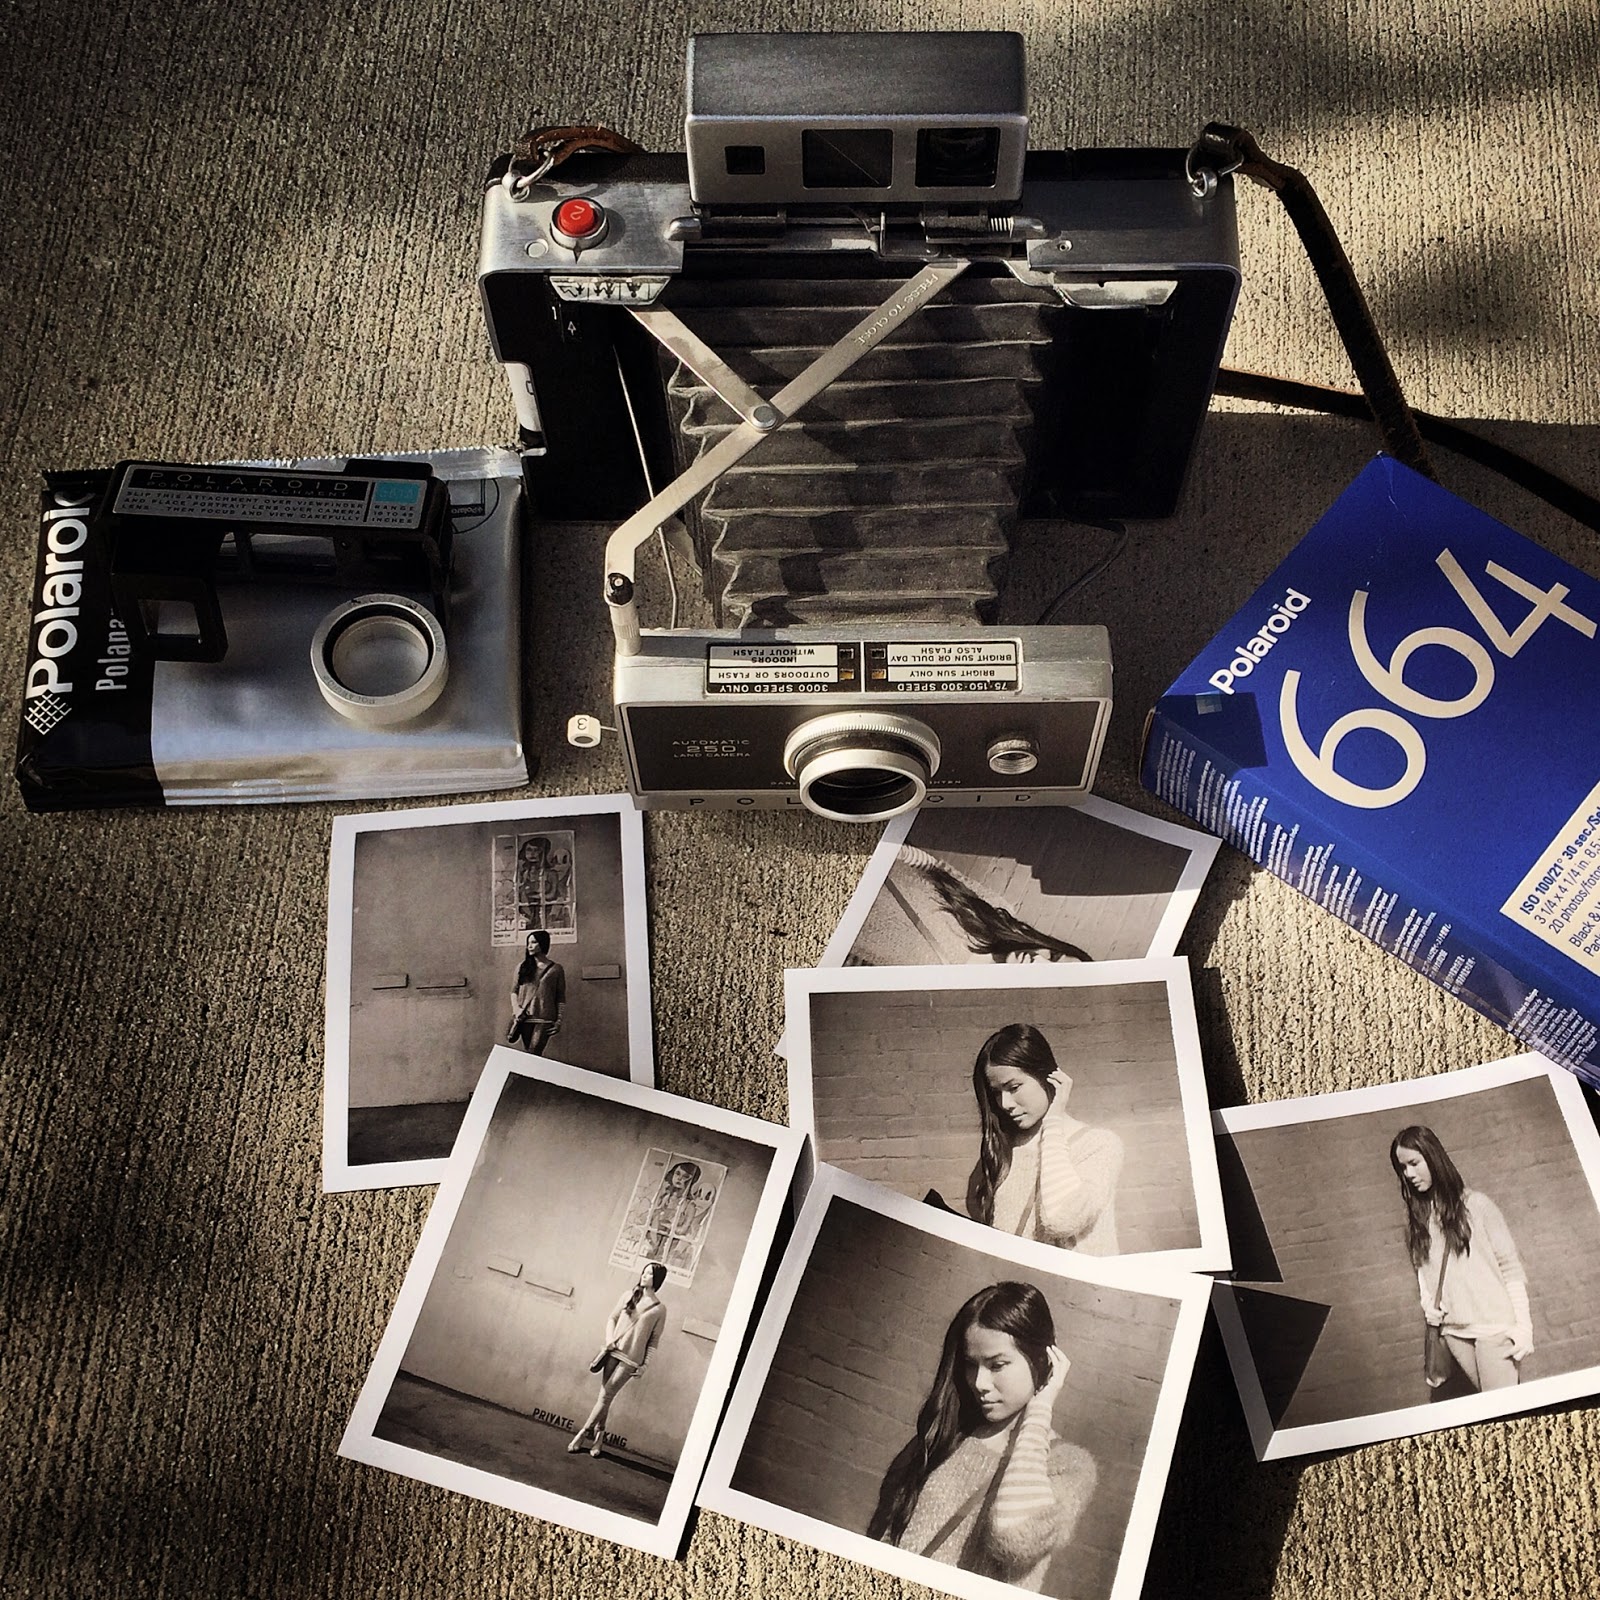 Polaroid® 667 Film